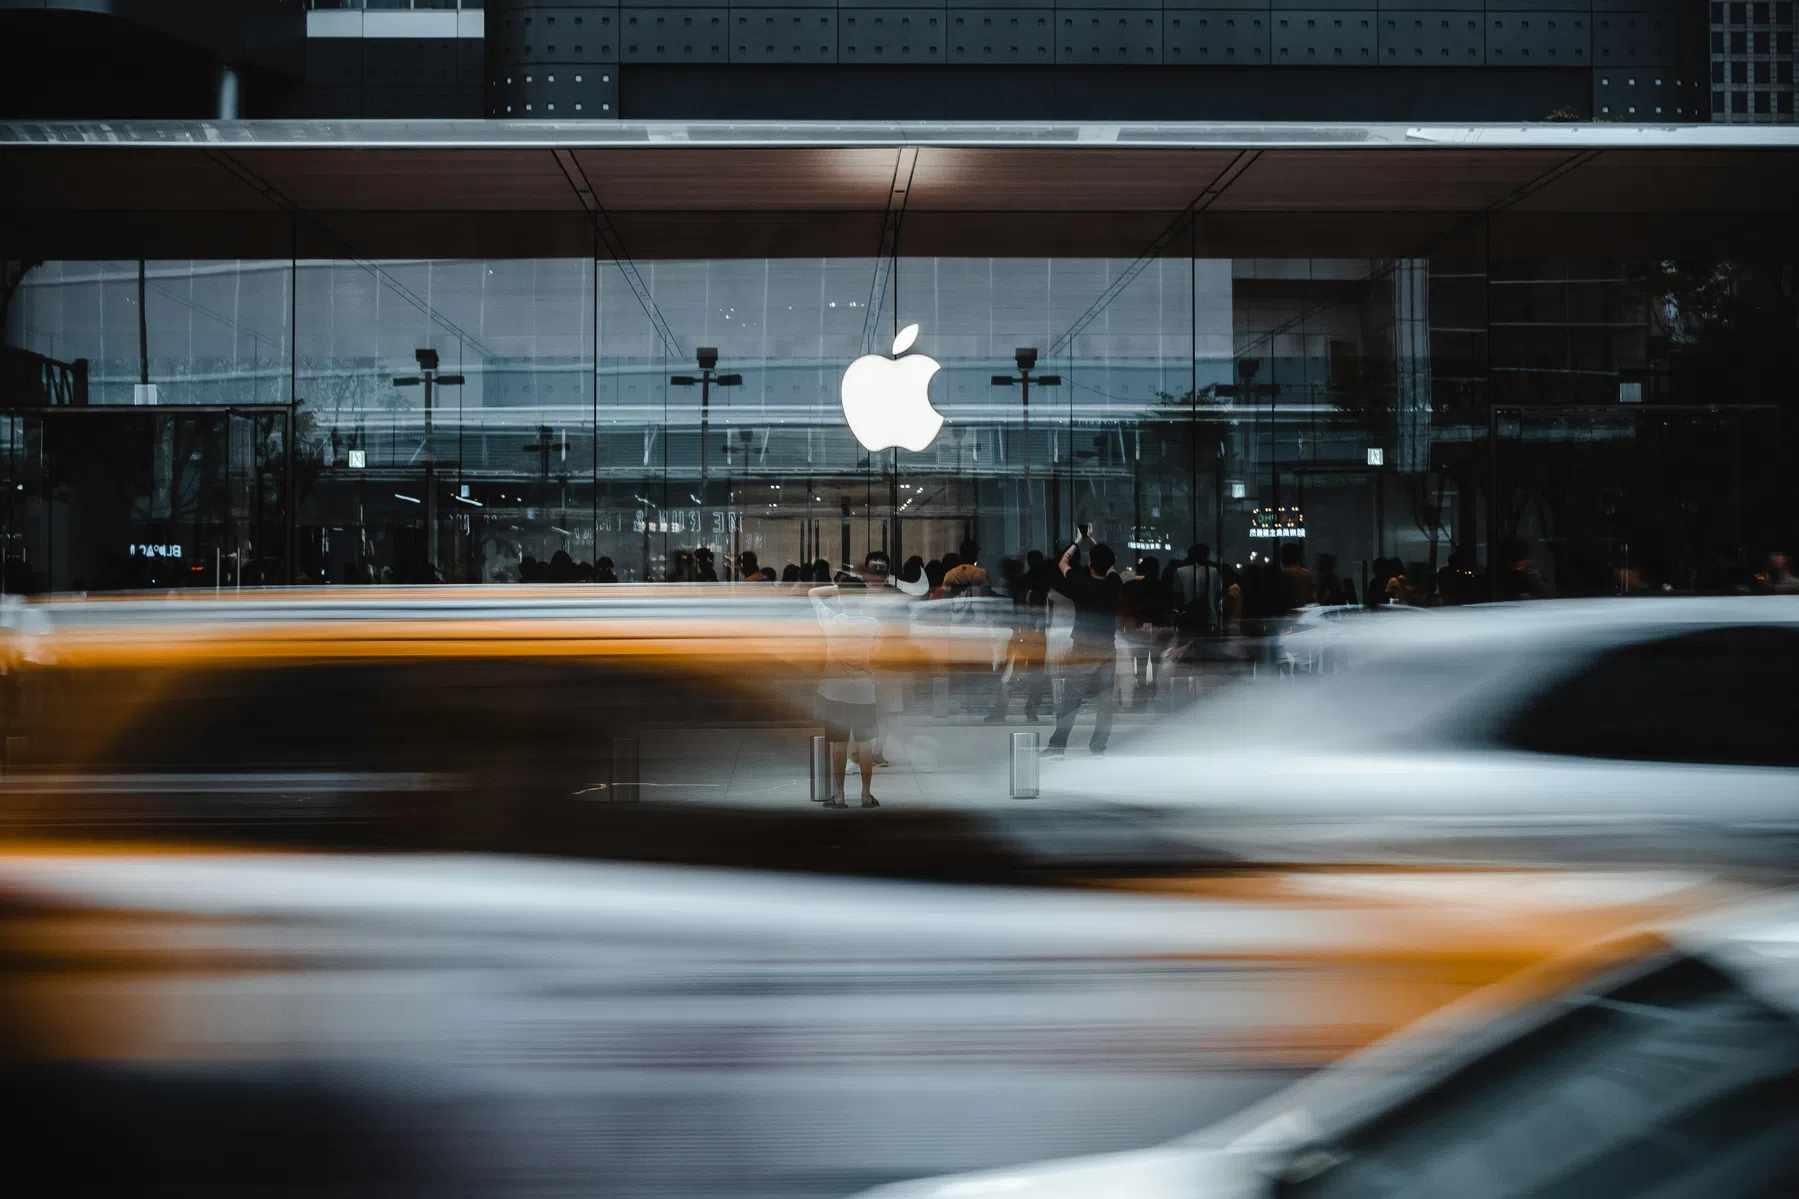 Apple stak 10 miljard dollar in 'Apple Car', die steeds wat anders werd